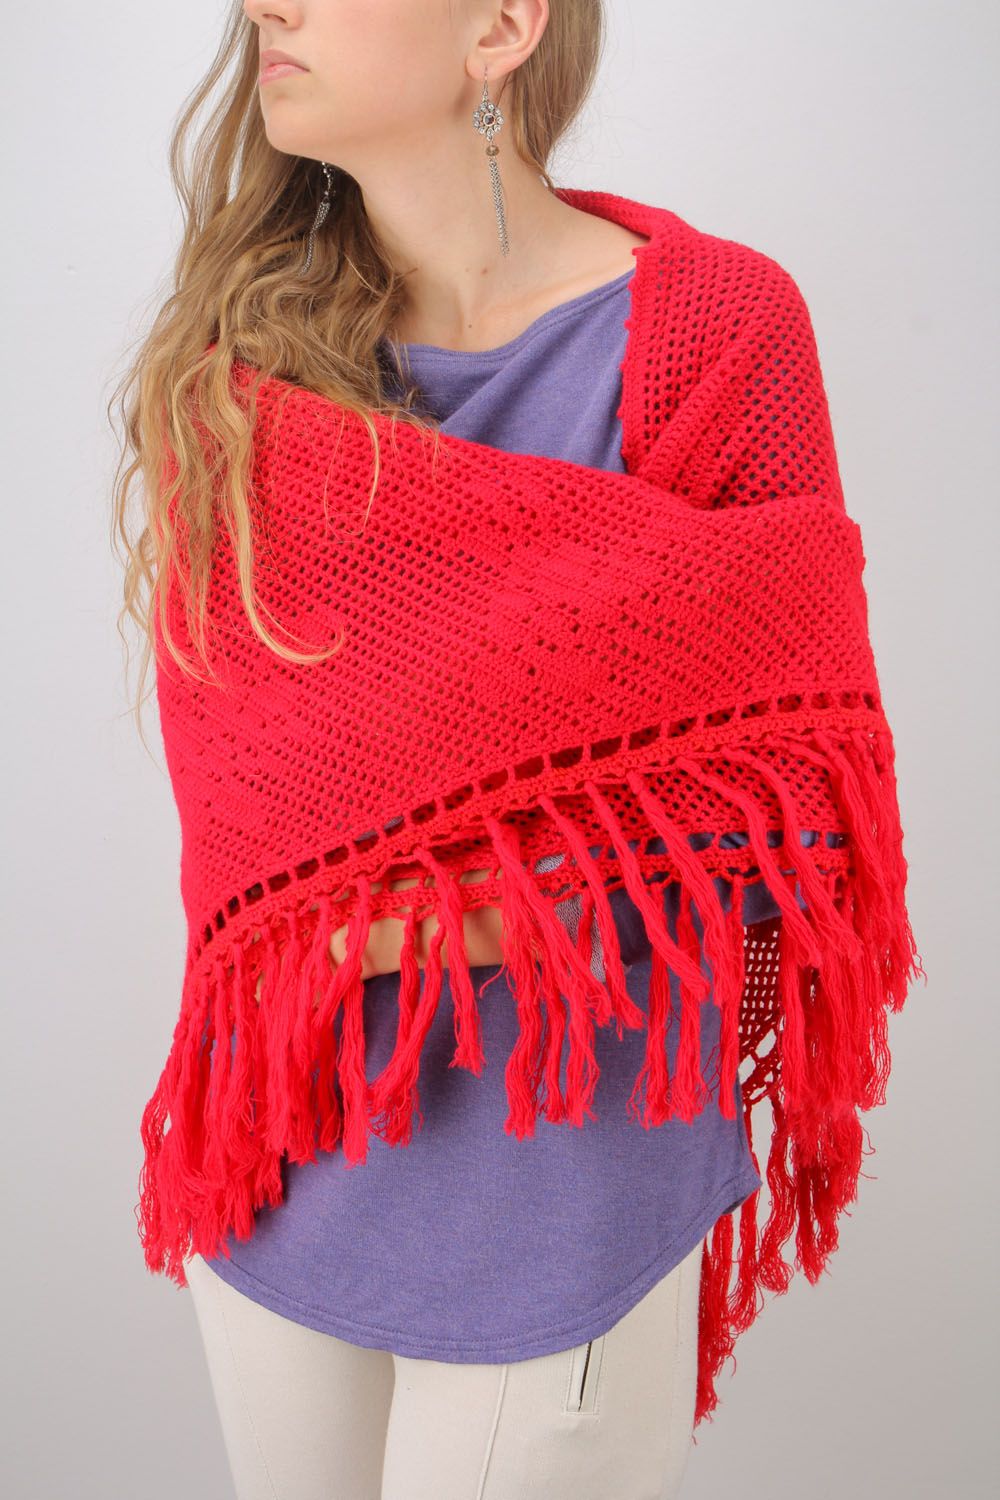 Châle chaud tricoté fait main rouge en fils de laine accessoire pour femme photo 1